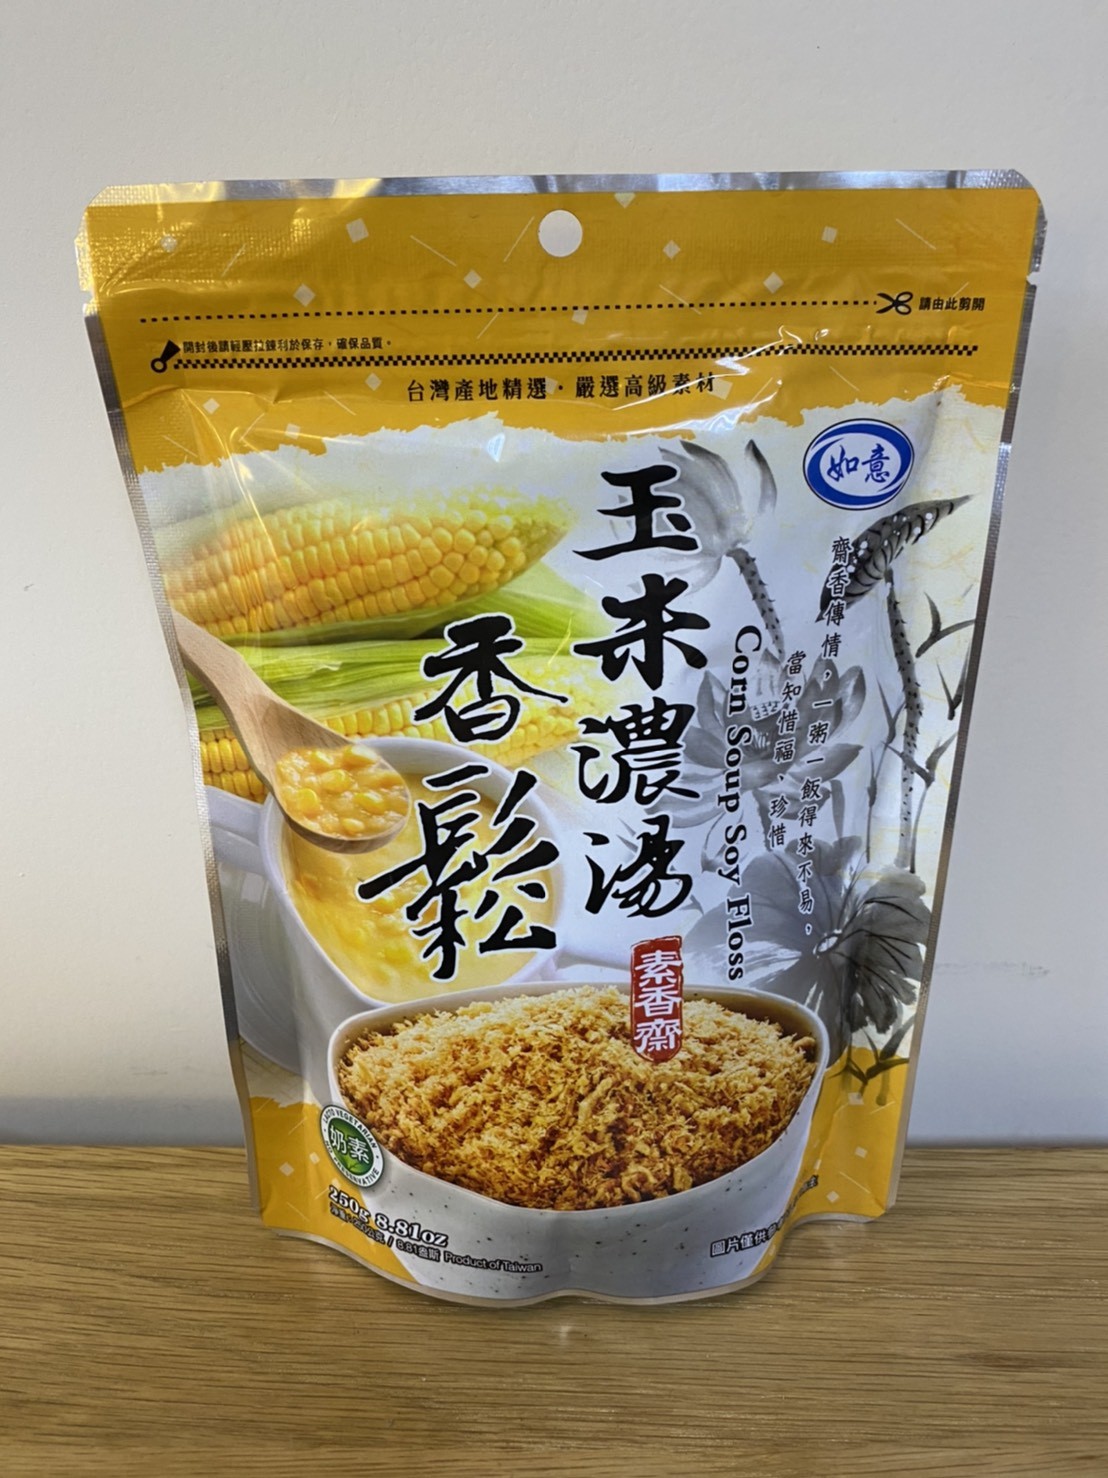 【如意】玉米濃湯香鬆250g(全素)